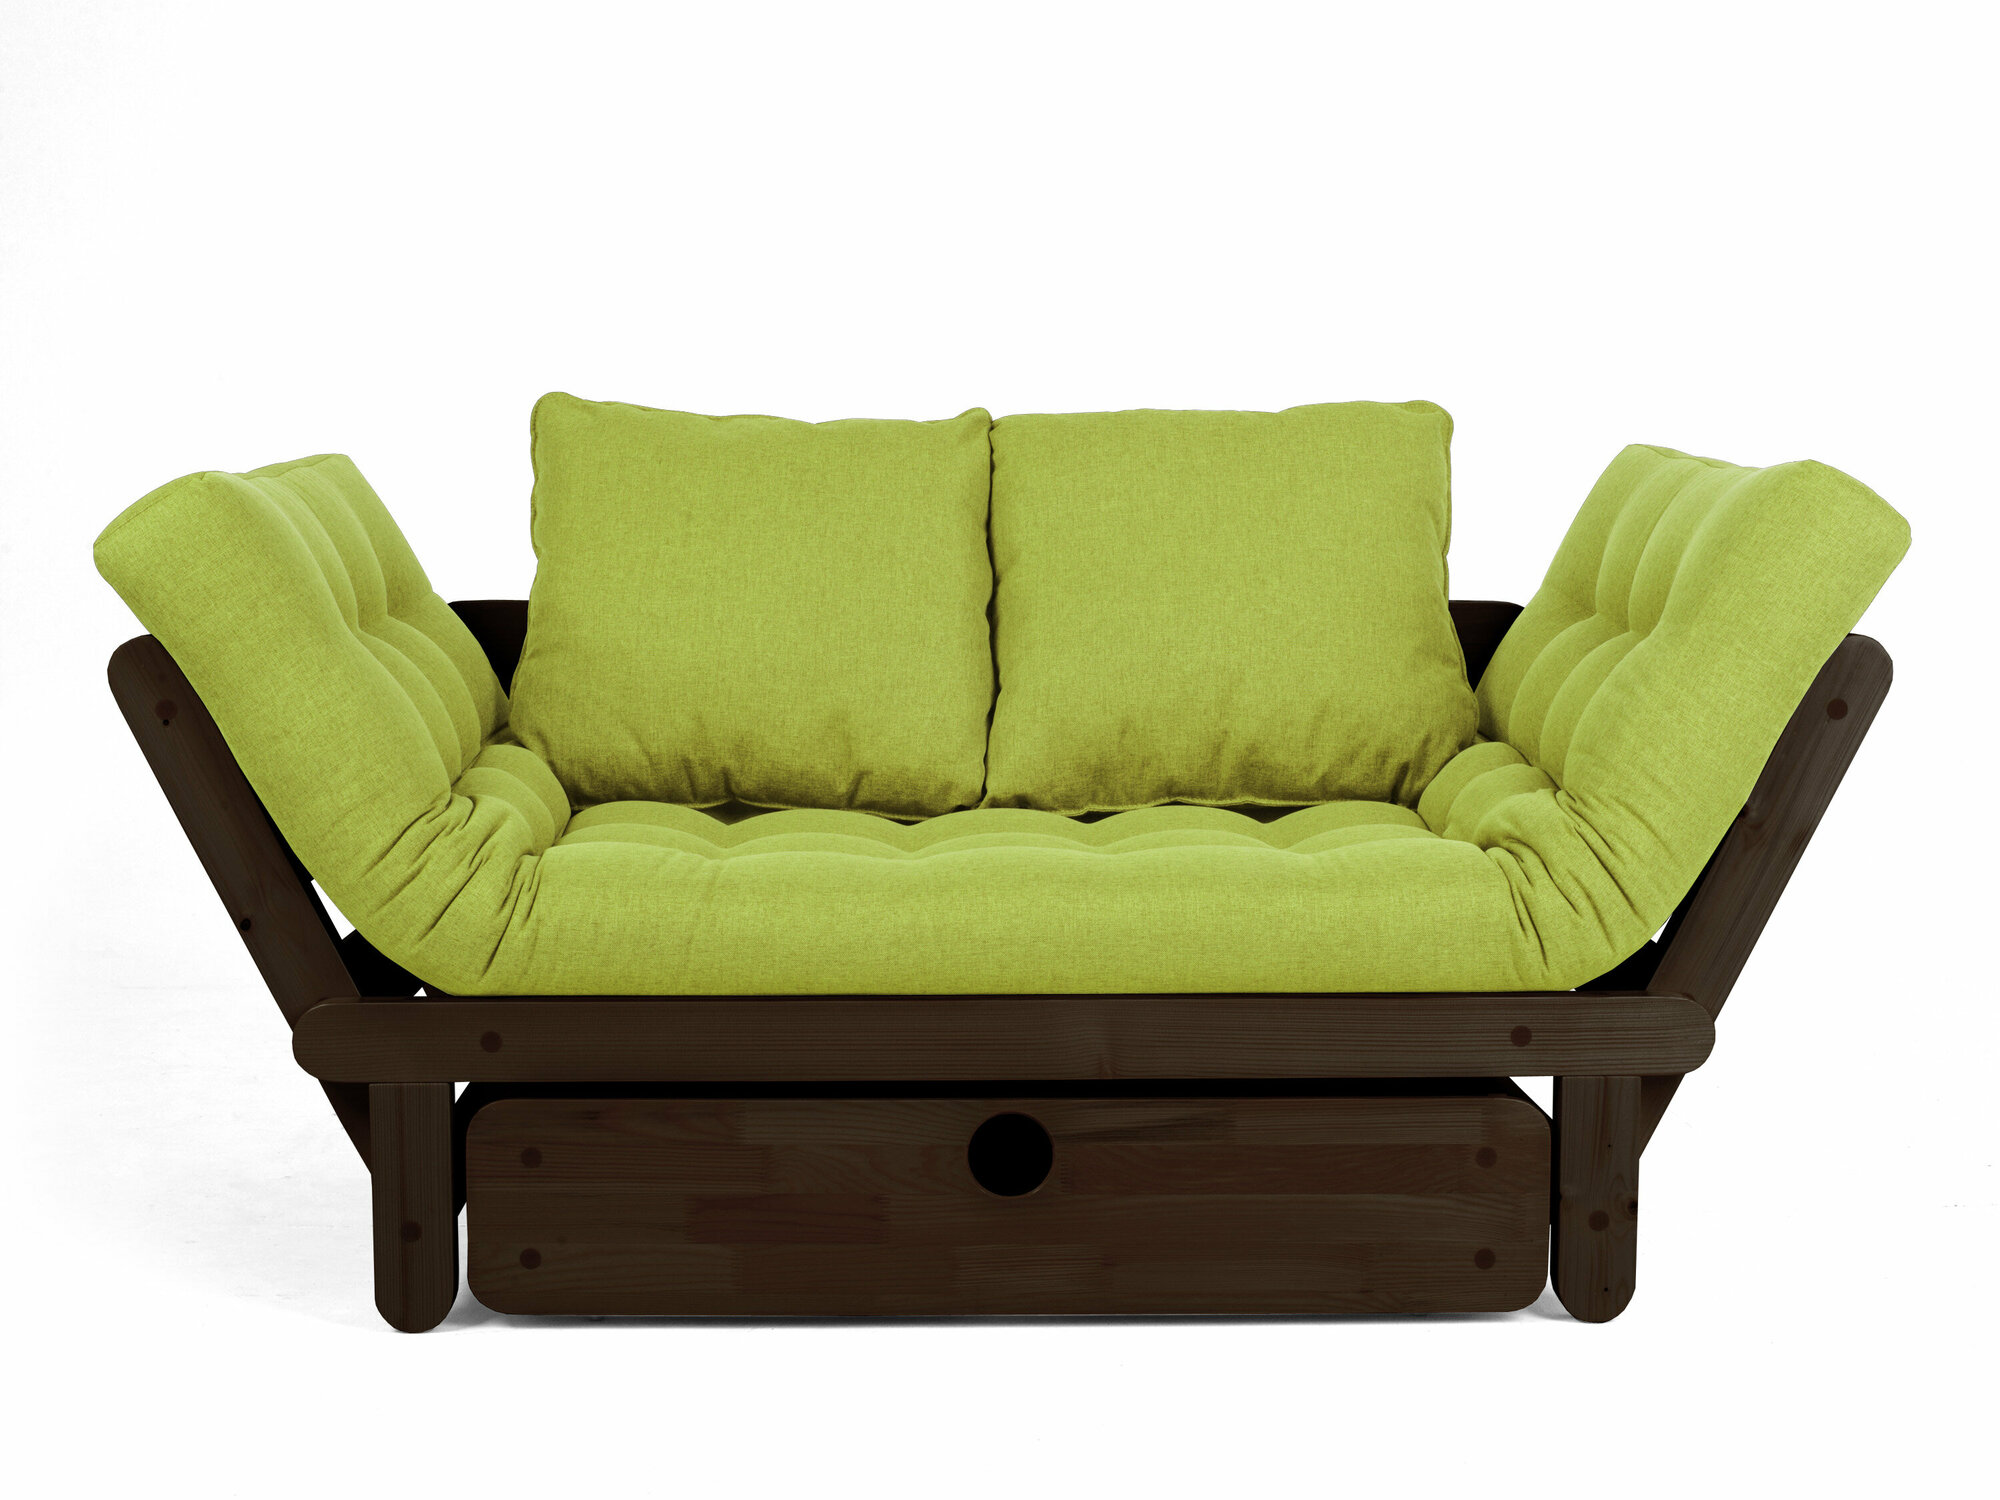 Садовый диван сламбер BOX-С, зеленый-венге, рогожка, двухместный, массив дерева, в офис, в салон красоты, на ножках, скандинавский лофт